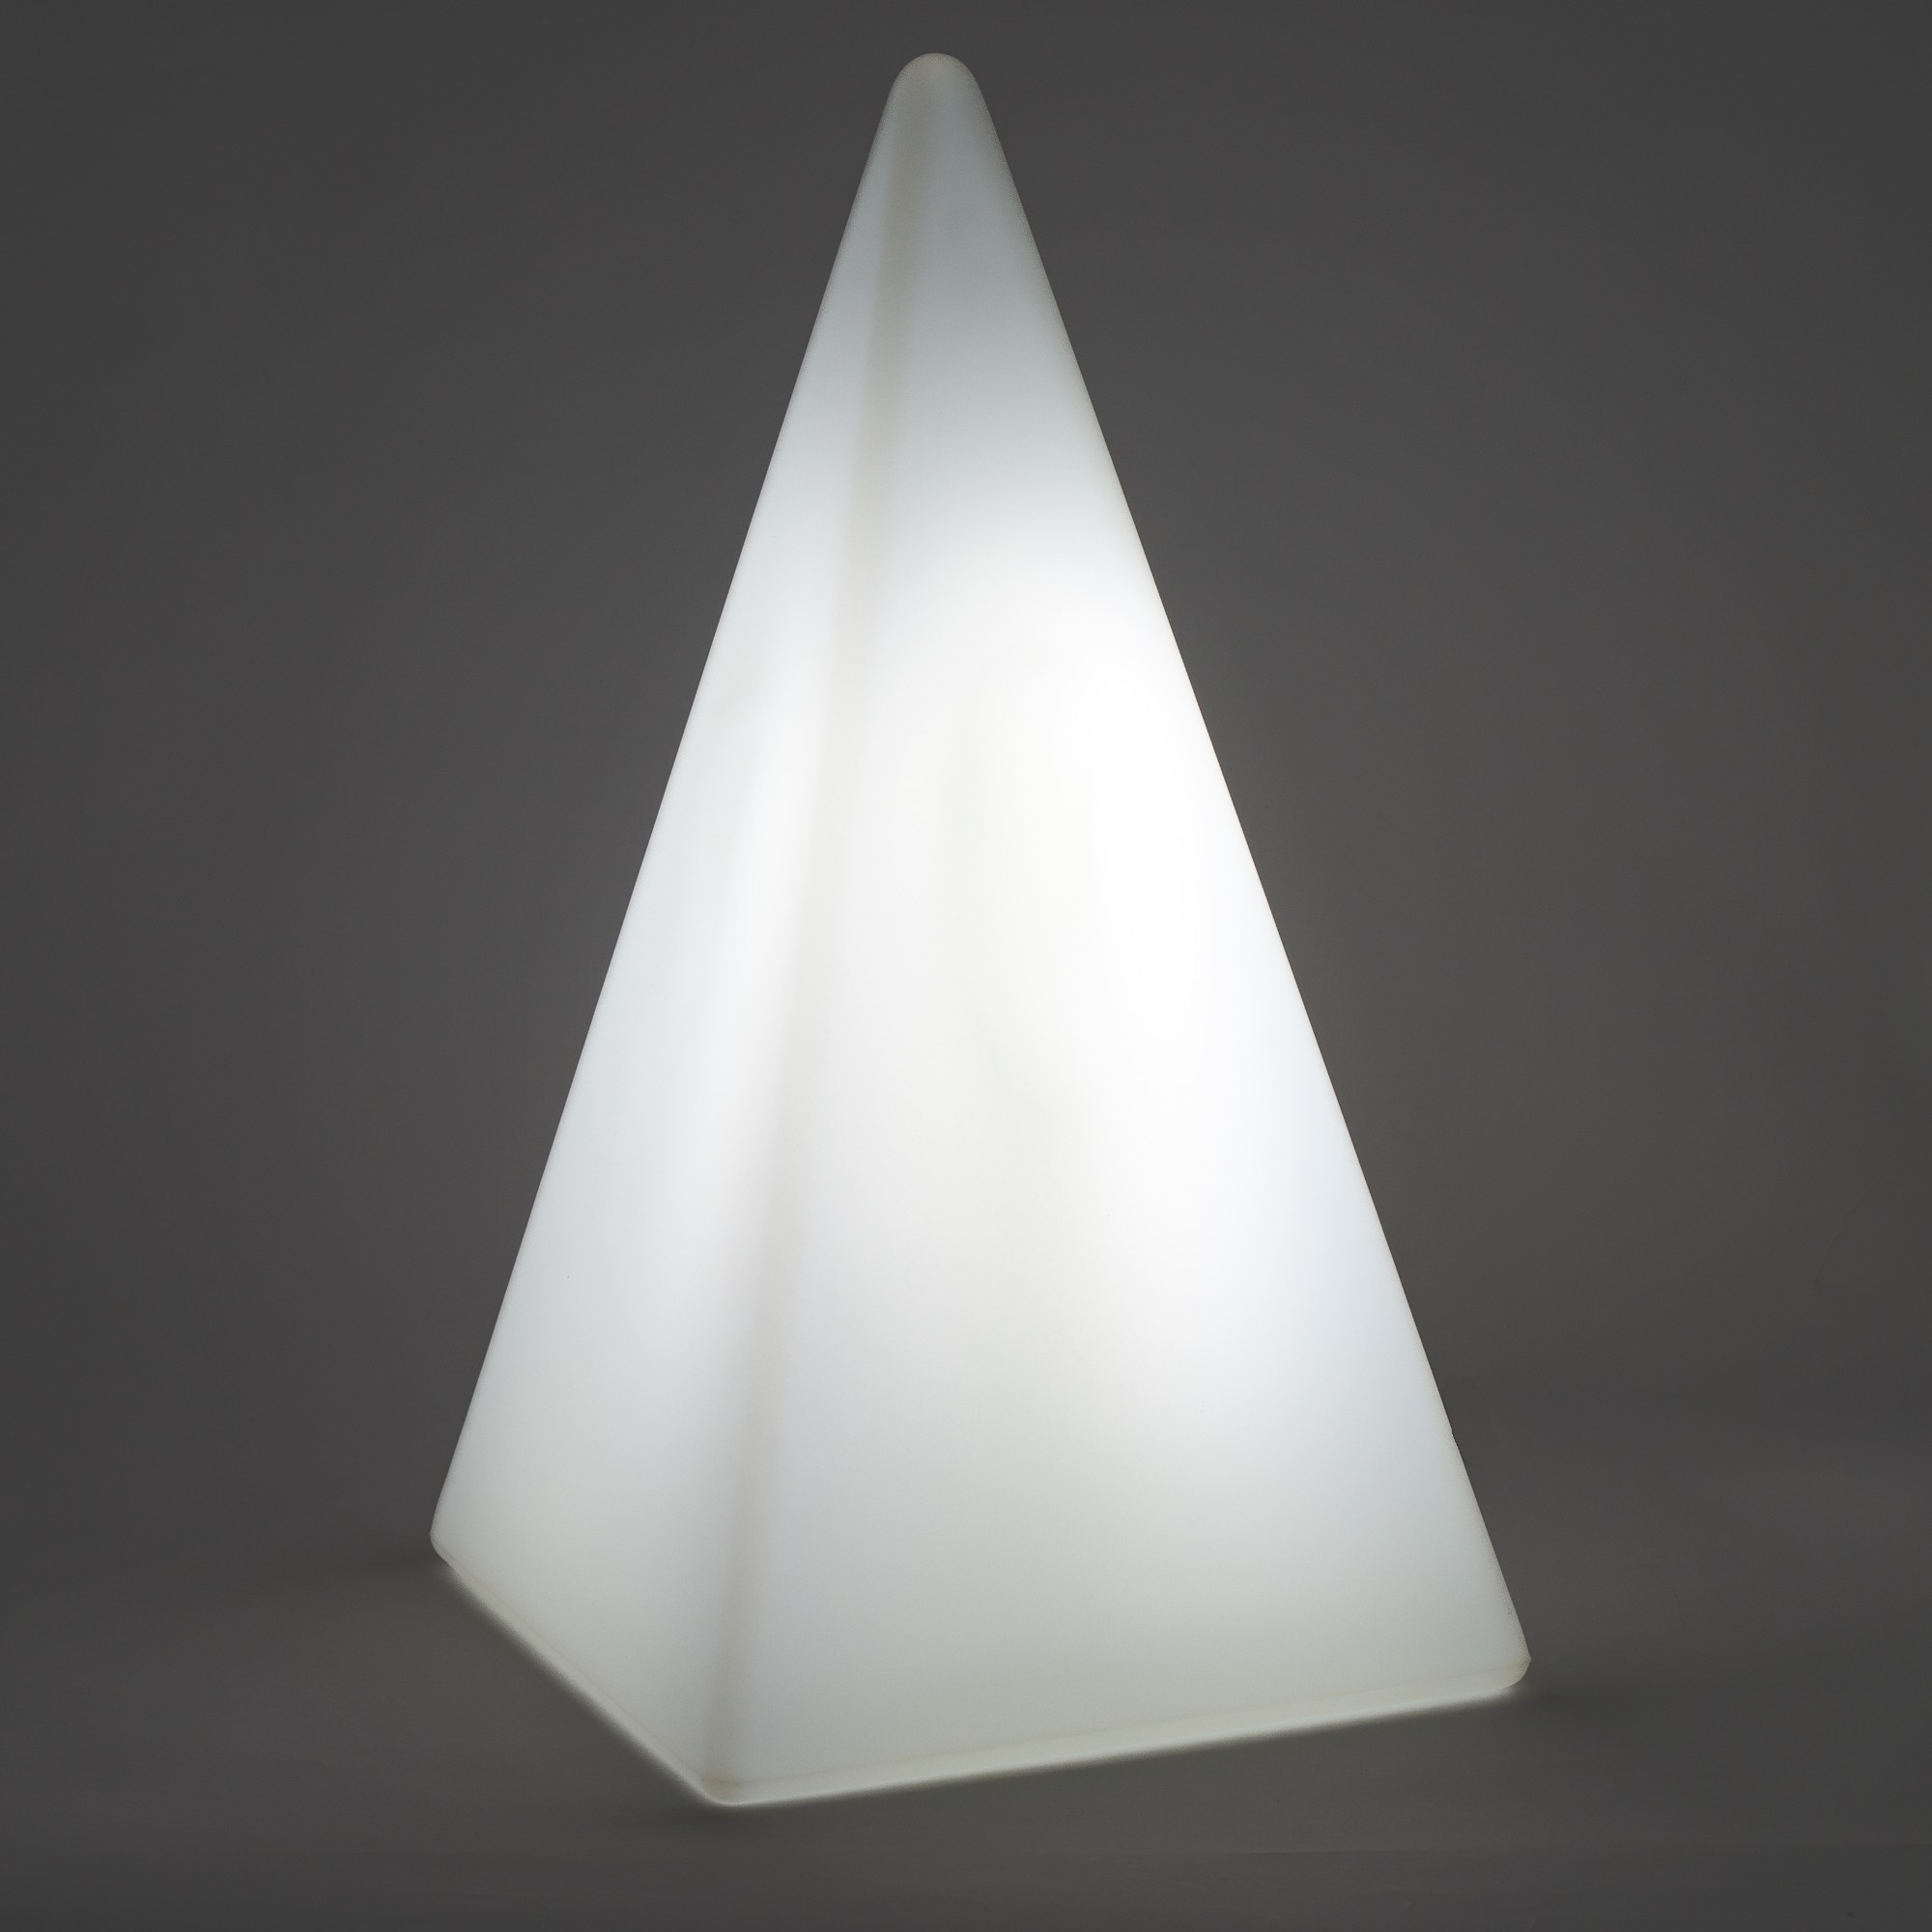 70304 Standleuchte Pyramide 73 cm der Firma EPSTEIN Design Leuchten